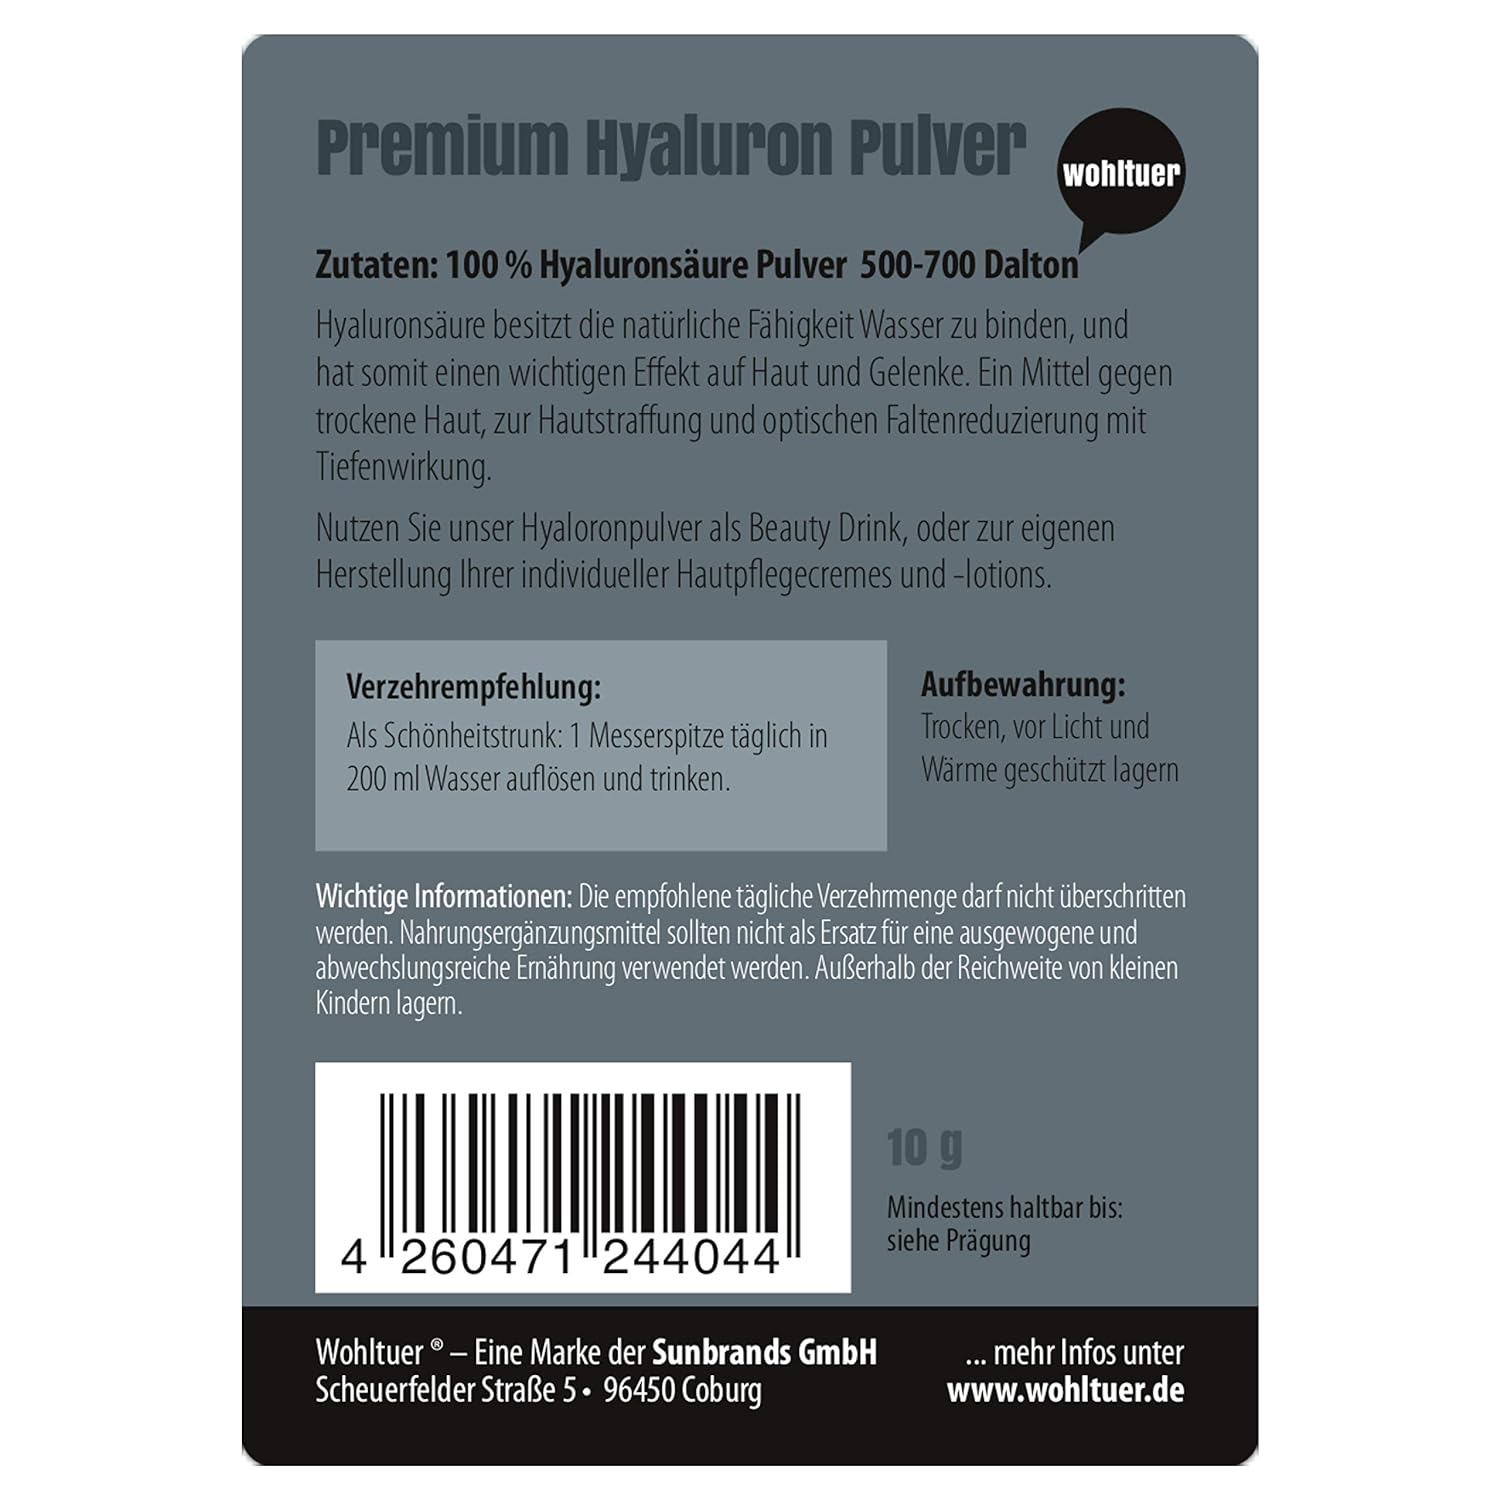 Wohltuer Premium Hyaluron Pulver 10g